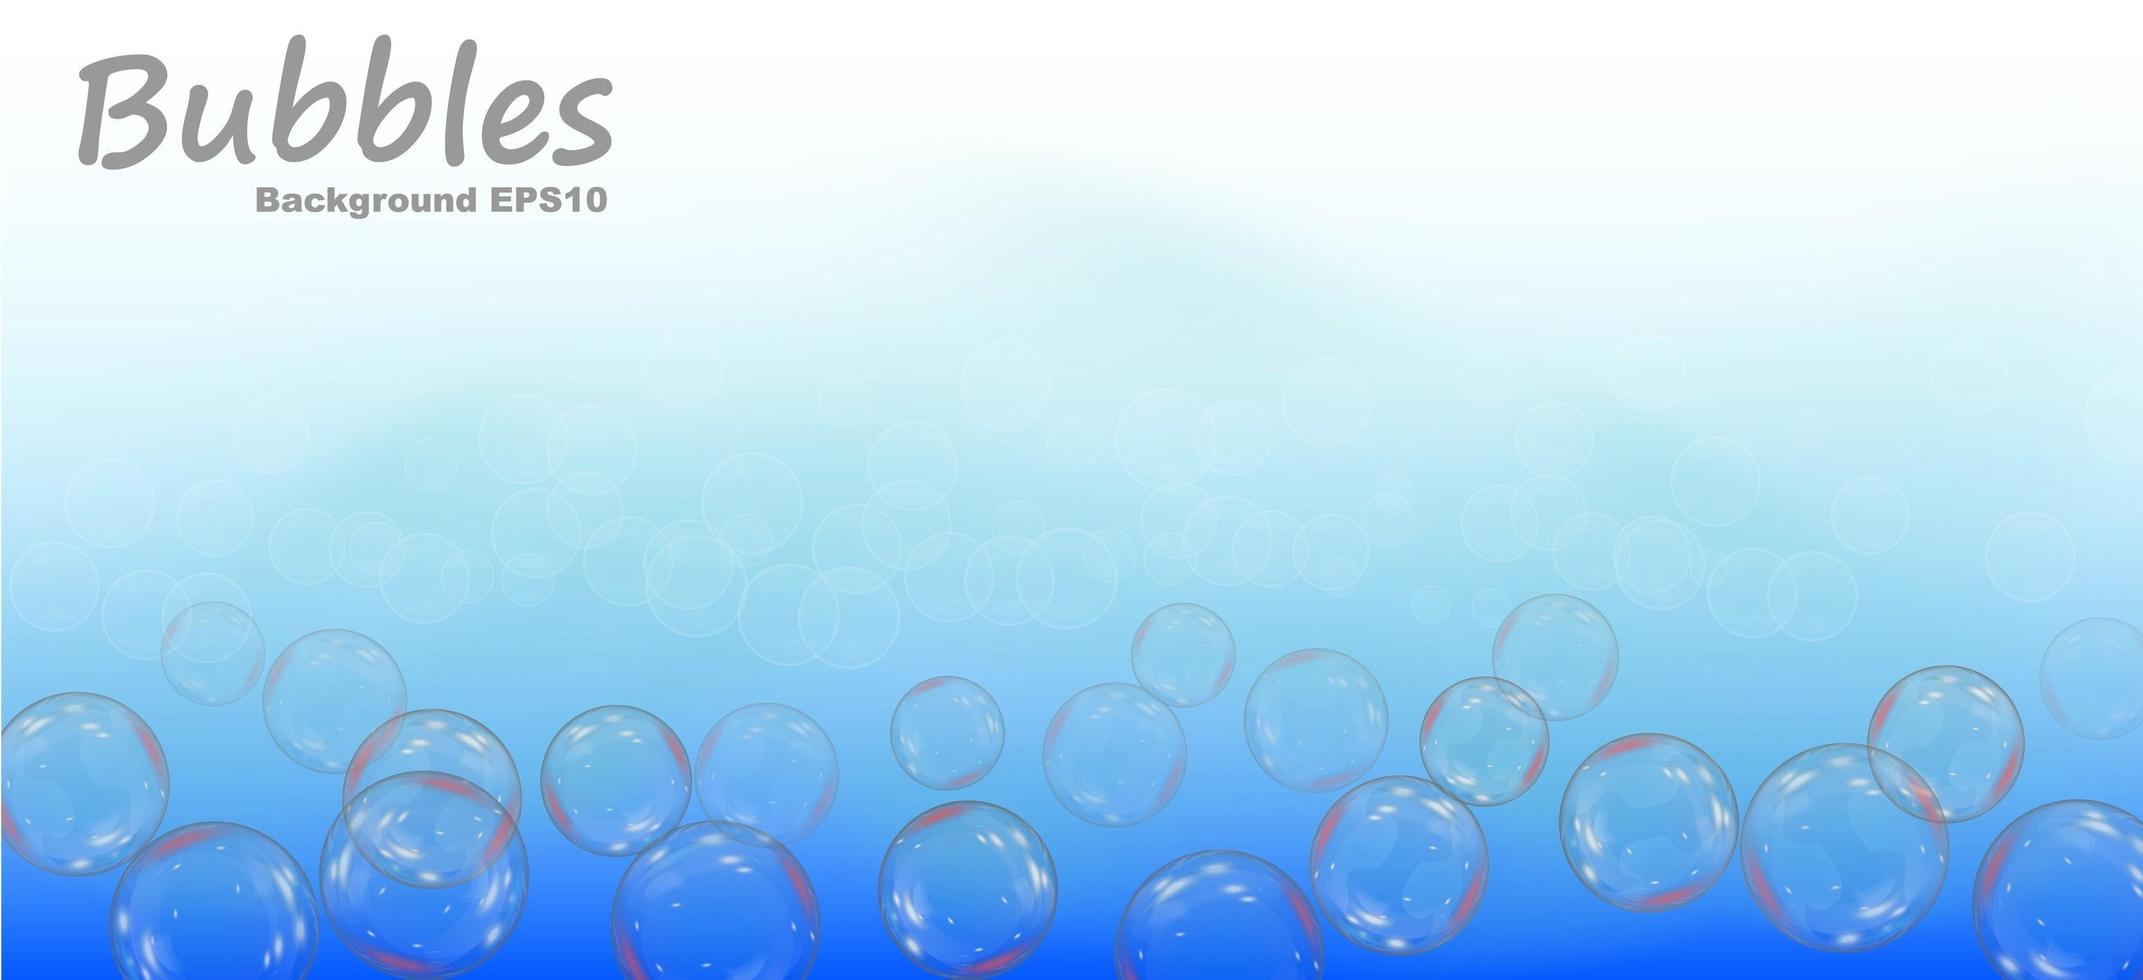 zeepbellen op een blauwe achtergrond. realistische vectorillustratie. label voor zeepspeelgoed voor kinderen. vector